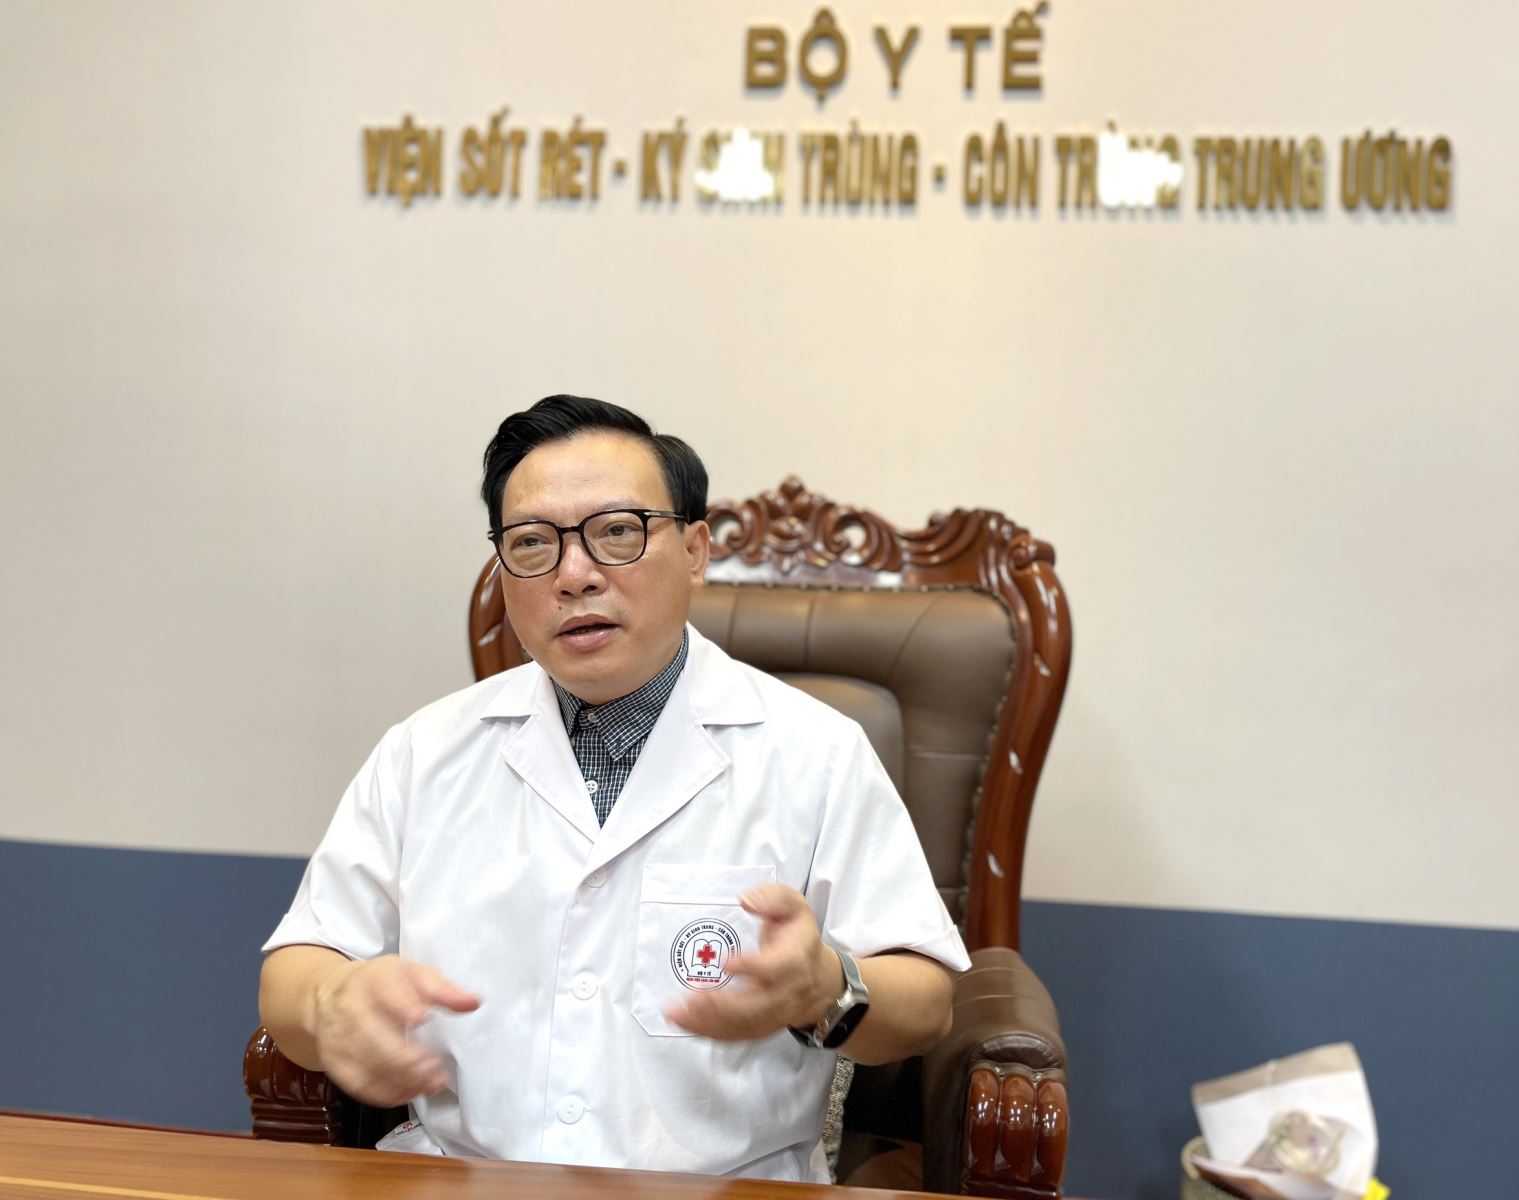 TS. Hoàng Đình Cảnh, Viện trưởng Viện Sốt rét - Ký sinh trùng - Côn trùng Trung ương.